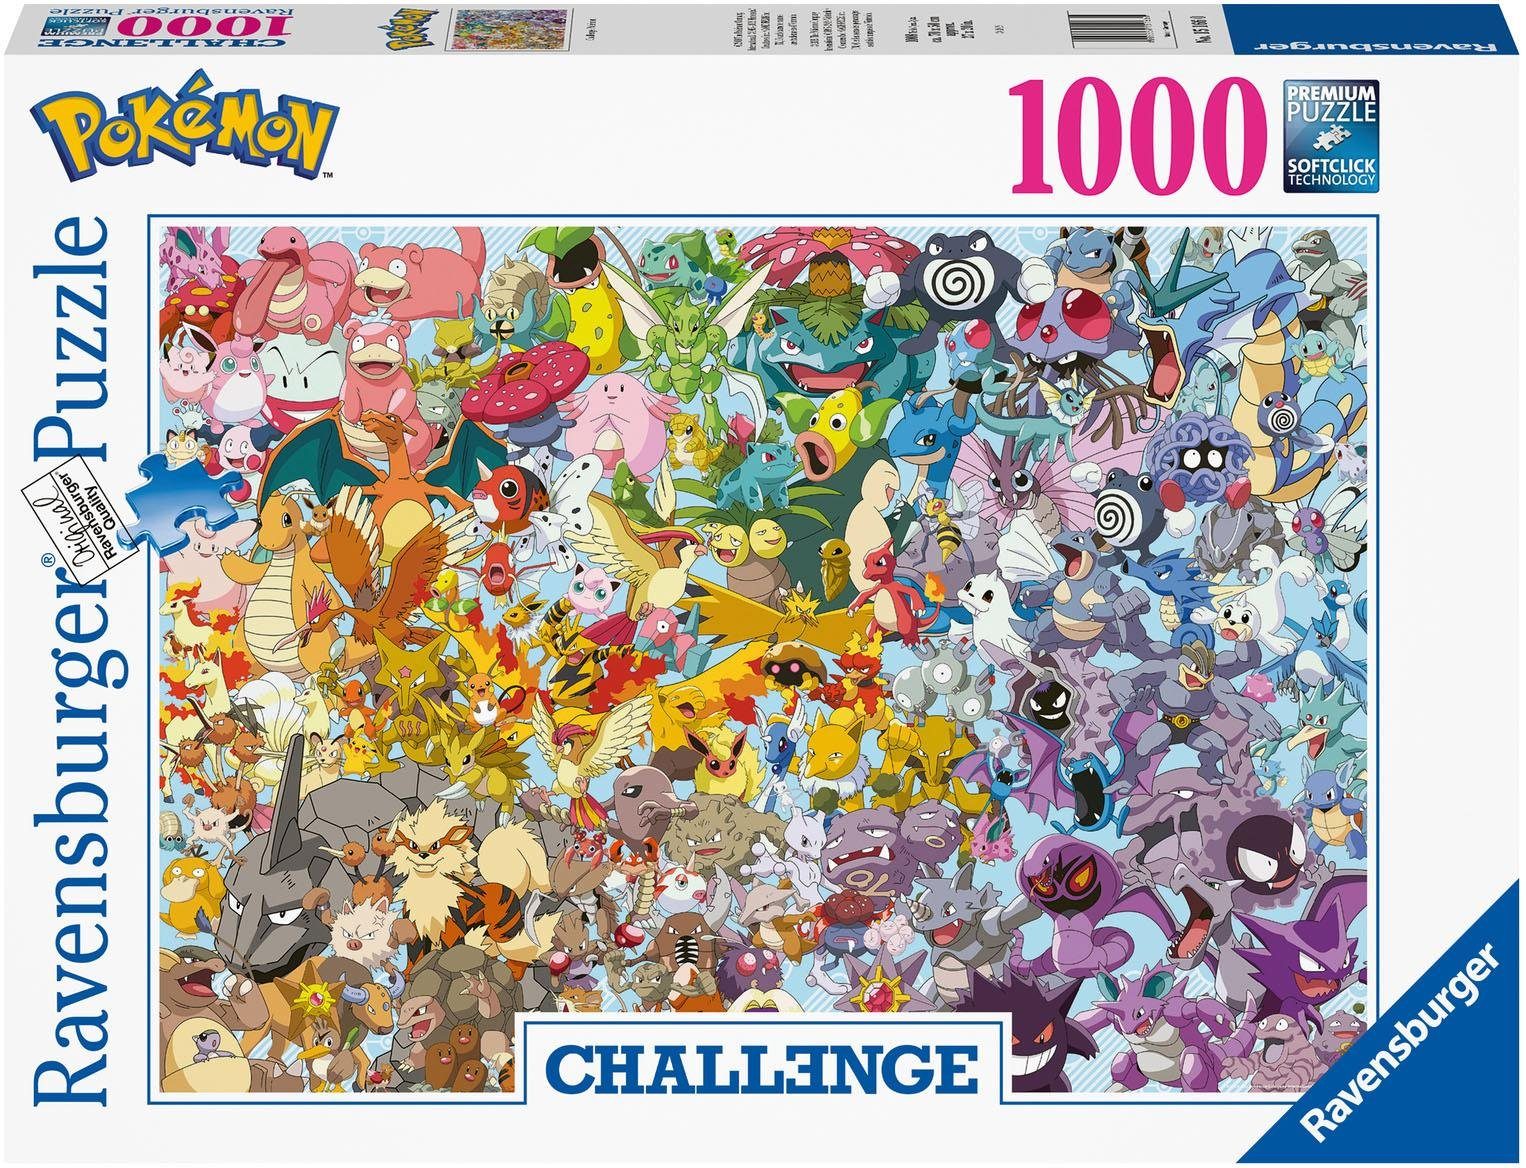 Ravensburger Пазлы Challenge, Pokémon, 1000 Пазлыteile, Made in Germany, FSC® - schützt Wald - weltweit